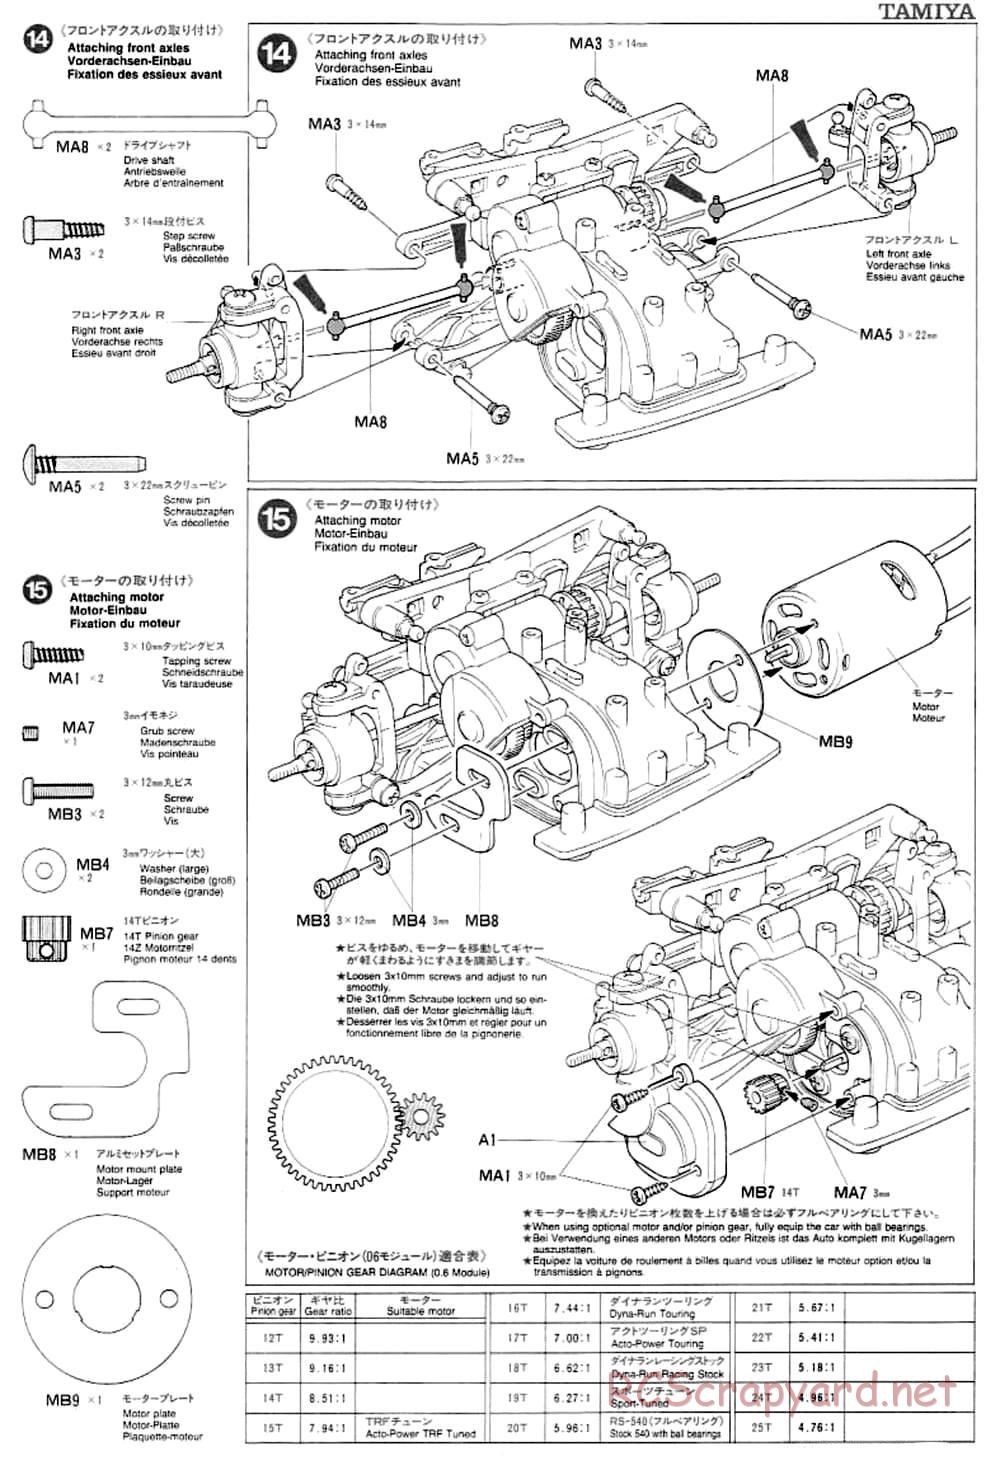 Tamiya - TA-03F Chassis - Manual - Page 9